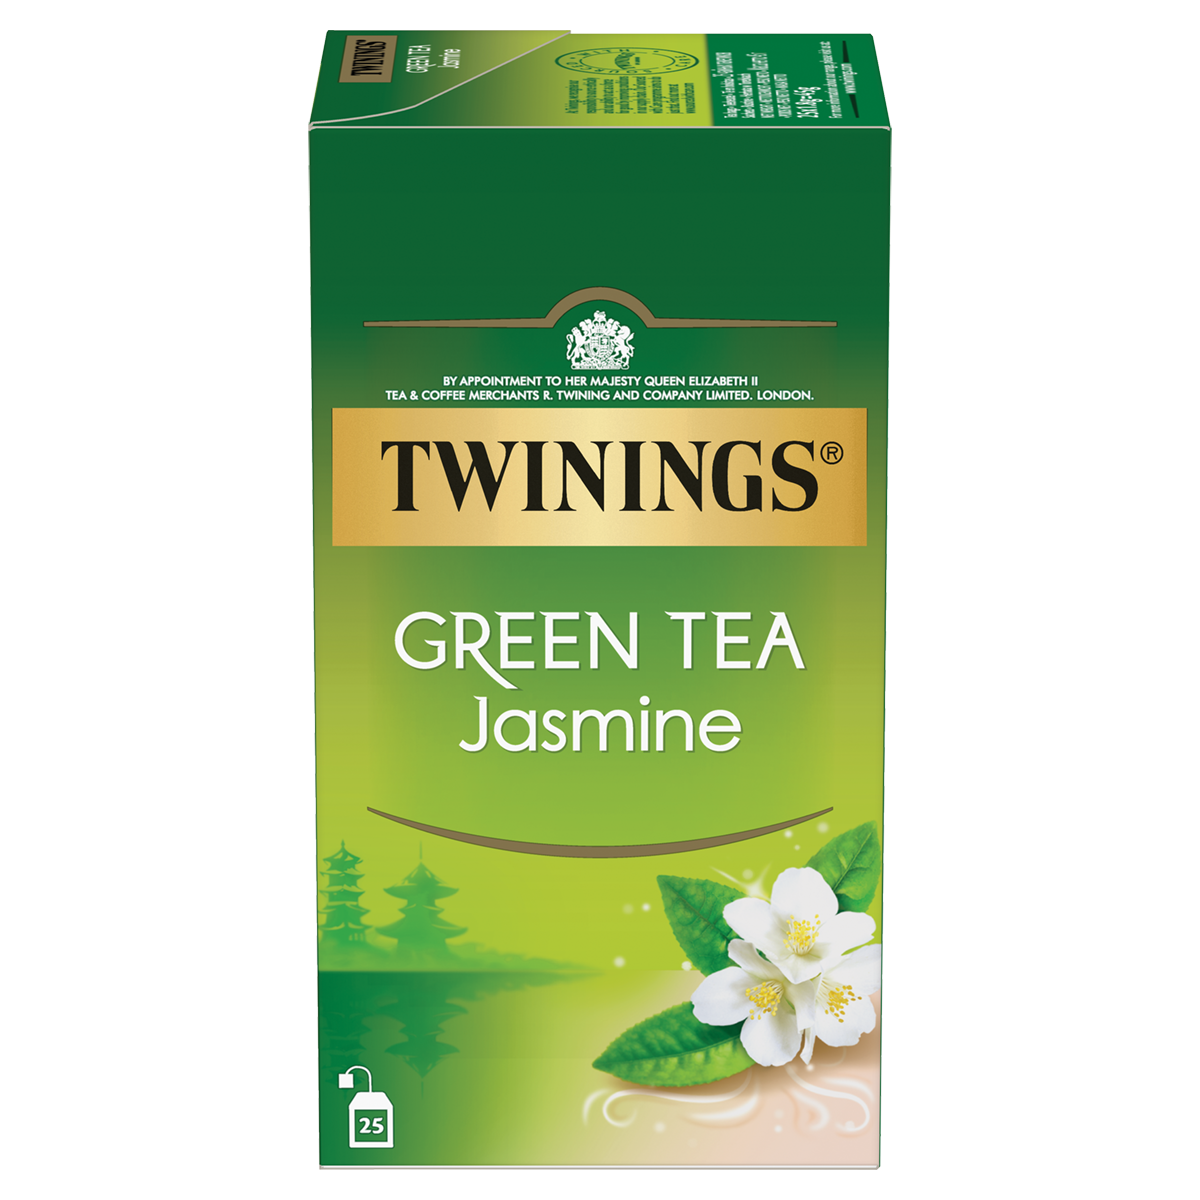  Green Tea Jasmine: le thé vert délicat